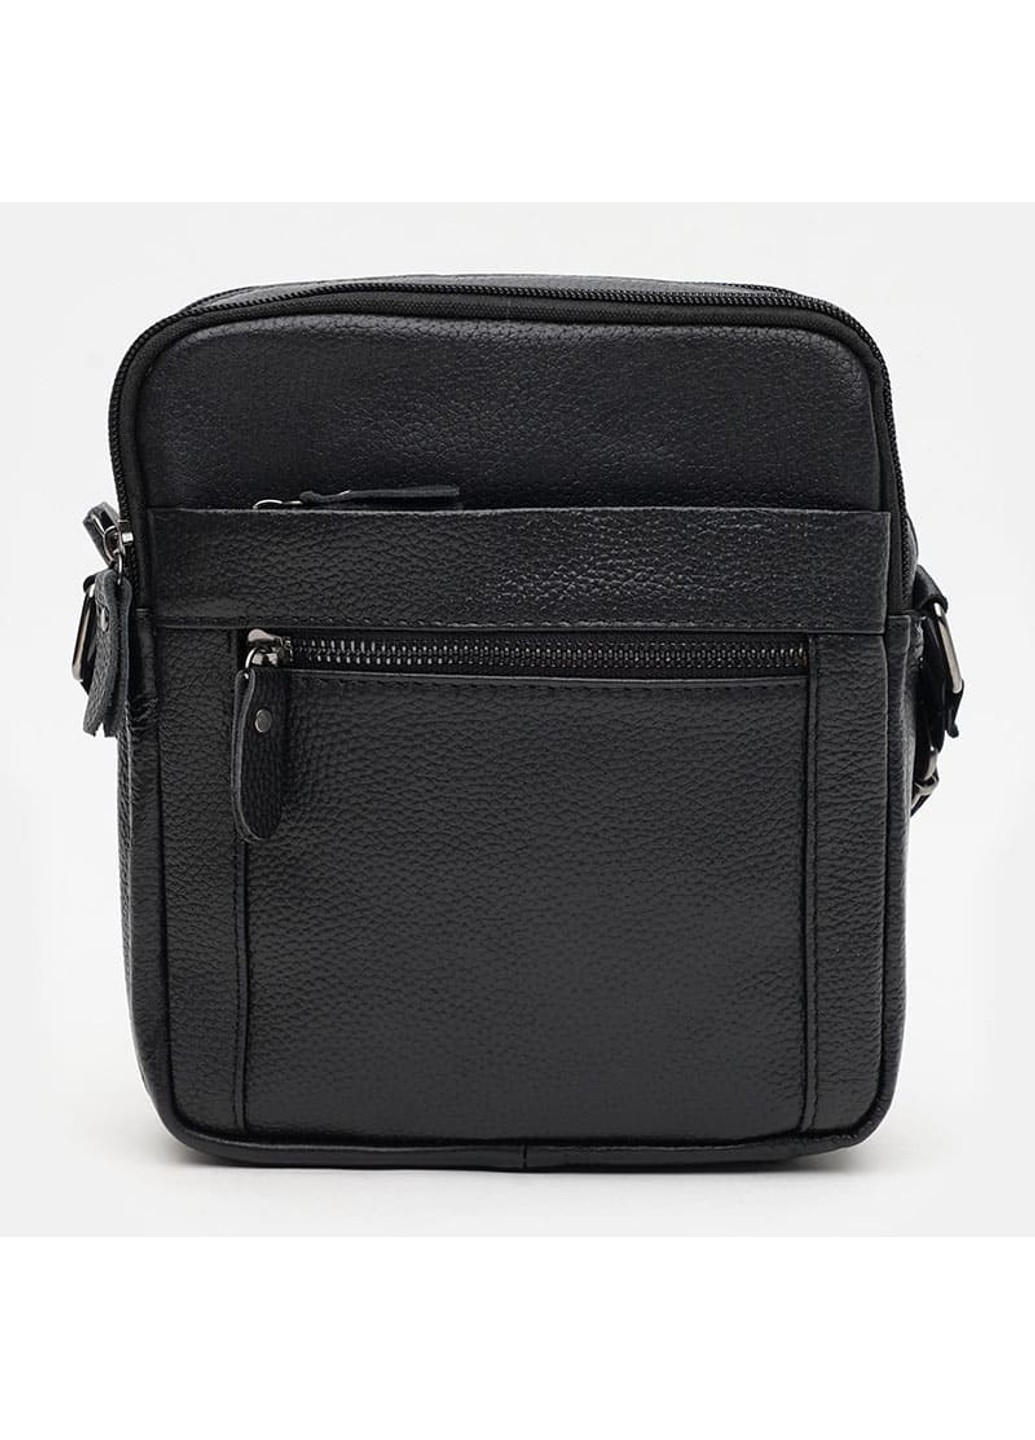 Мужская кожаная сумка K12333-black Borsa Leather (266143407)